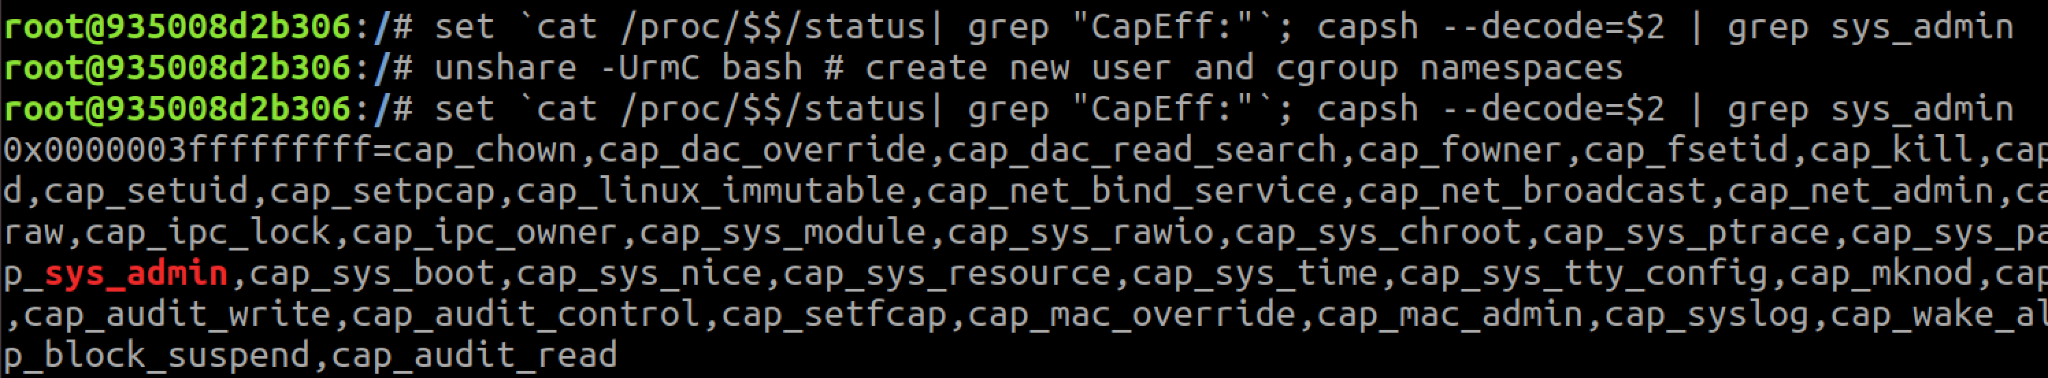 コンテナがCAP_SYS_ADMINケイパビリティを持つ新たなユーザー名前空間を作成しているところ